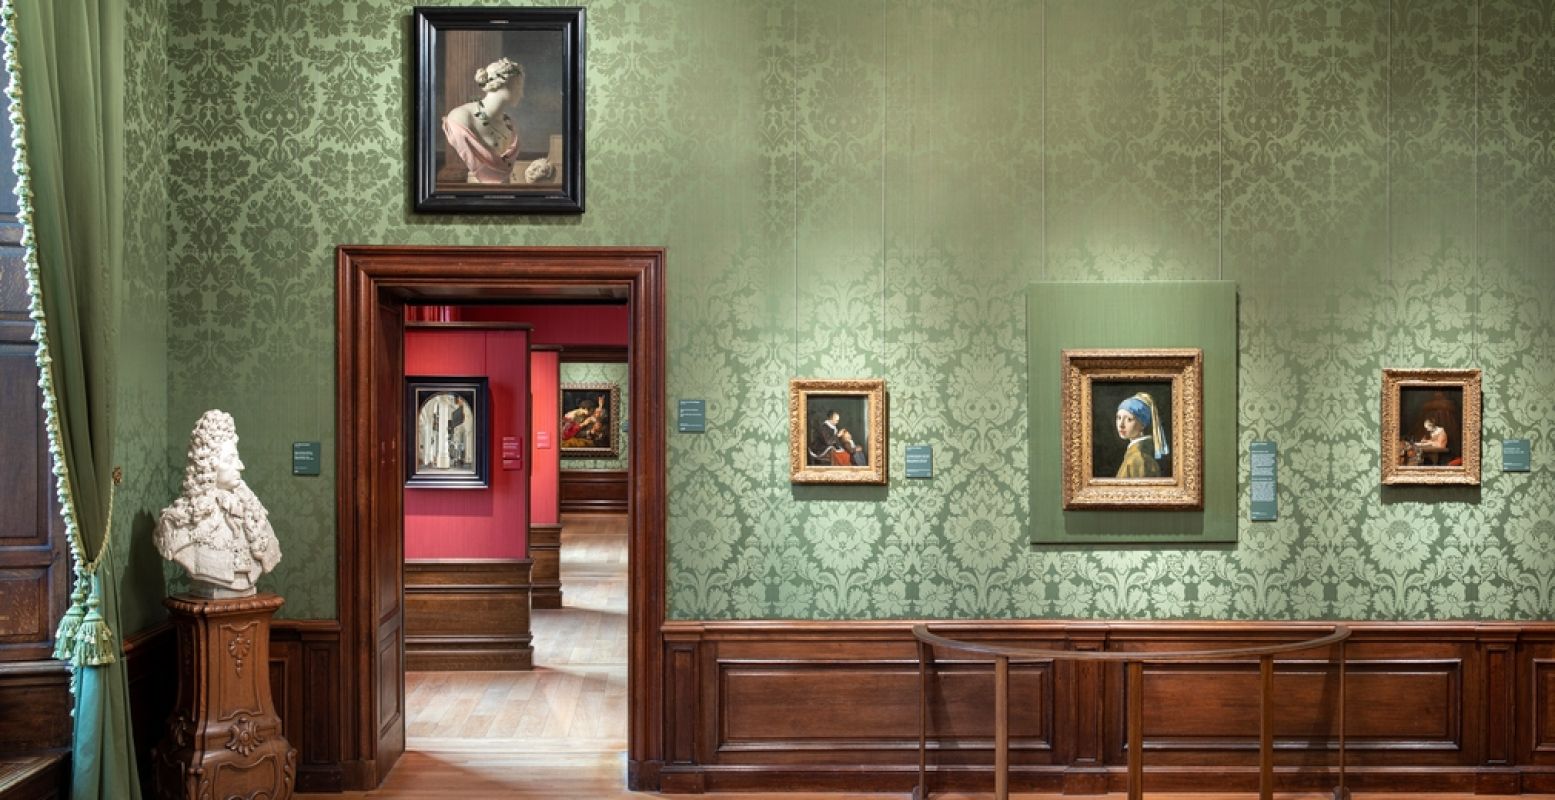 Zaal 15 in het Mauritshuis, maar dan haarscherp online. Foto: Mauritshuis